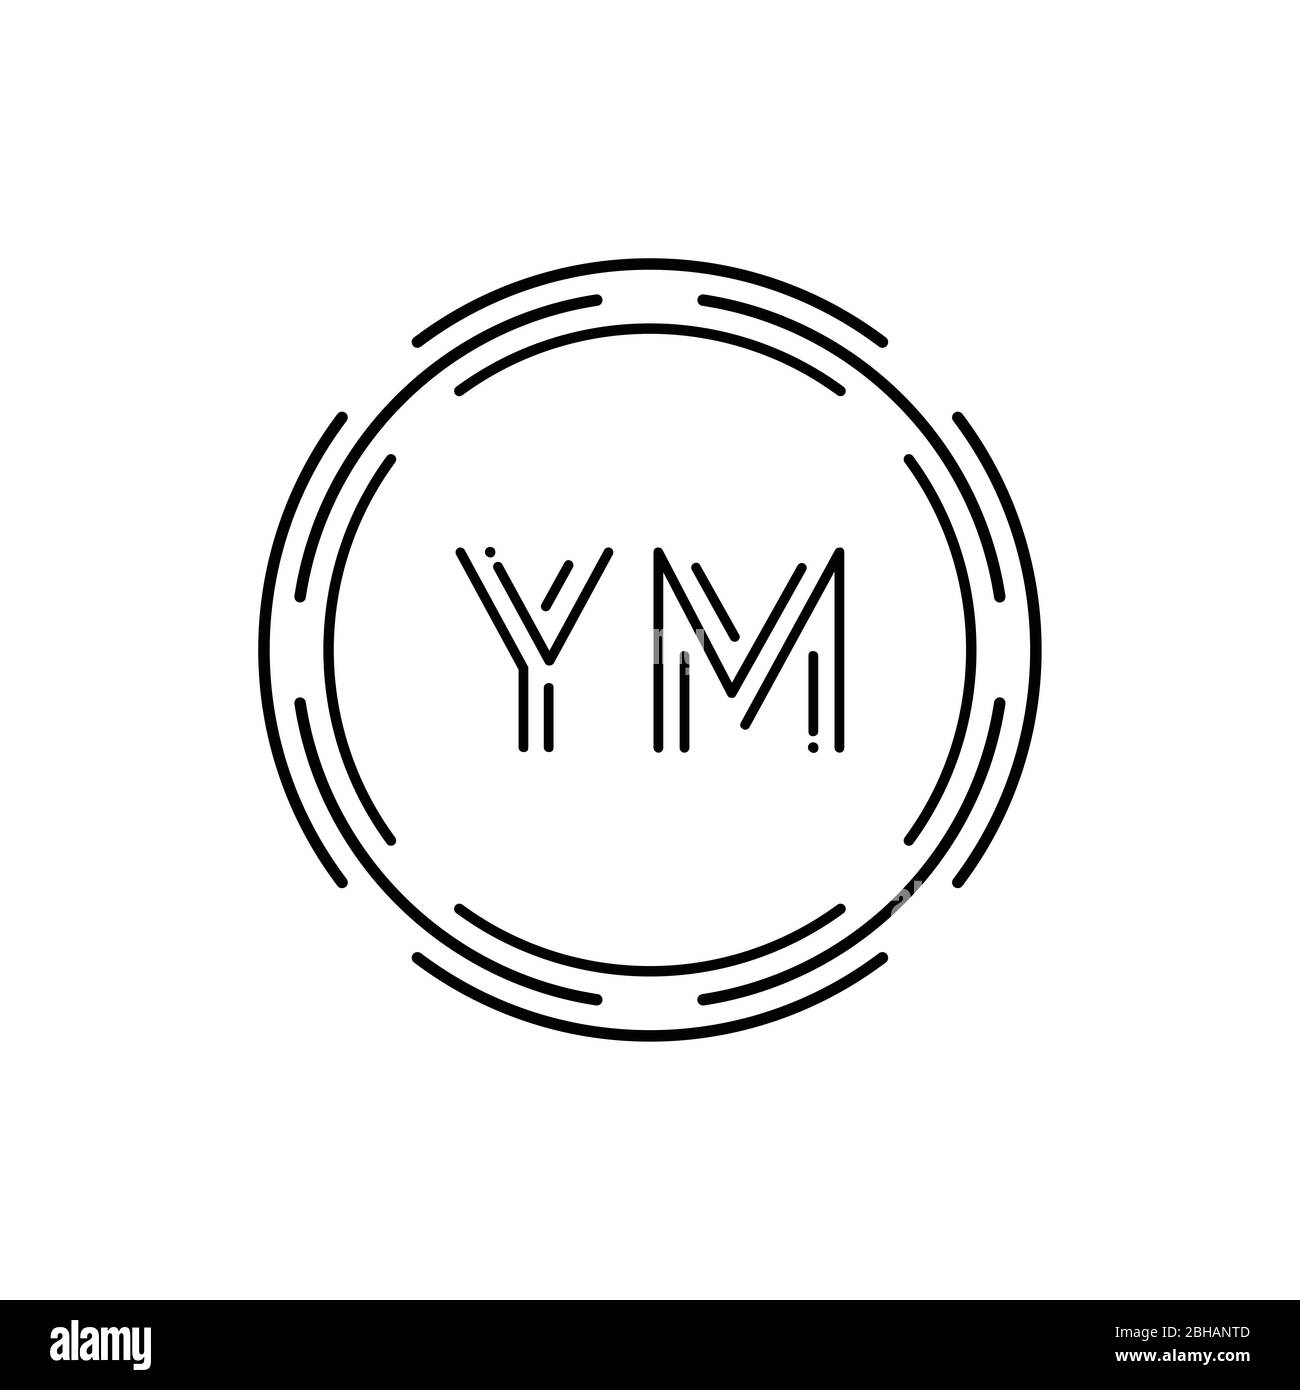 Modèle vectoriel initial de conception de logo YM. Illustration vectorielle du logo commercial YM lettre circulaire créatif Illustration de Vecteur